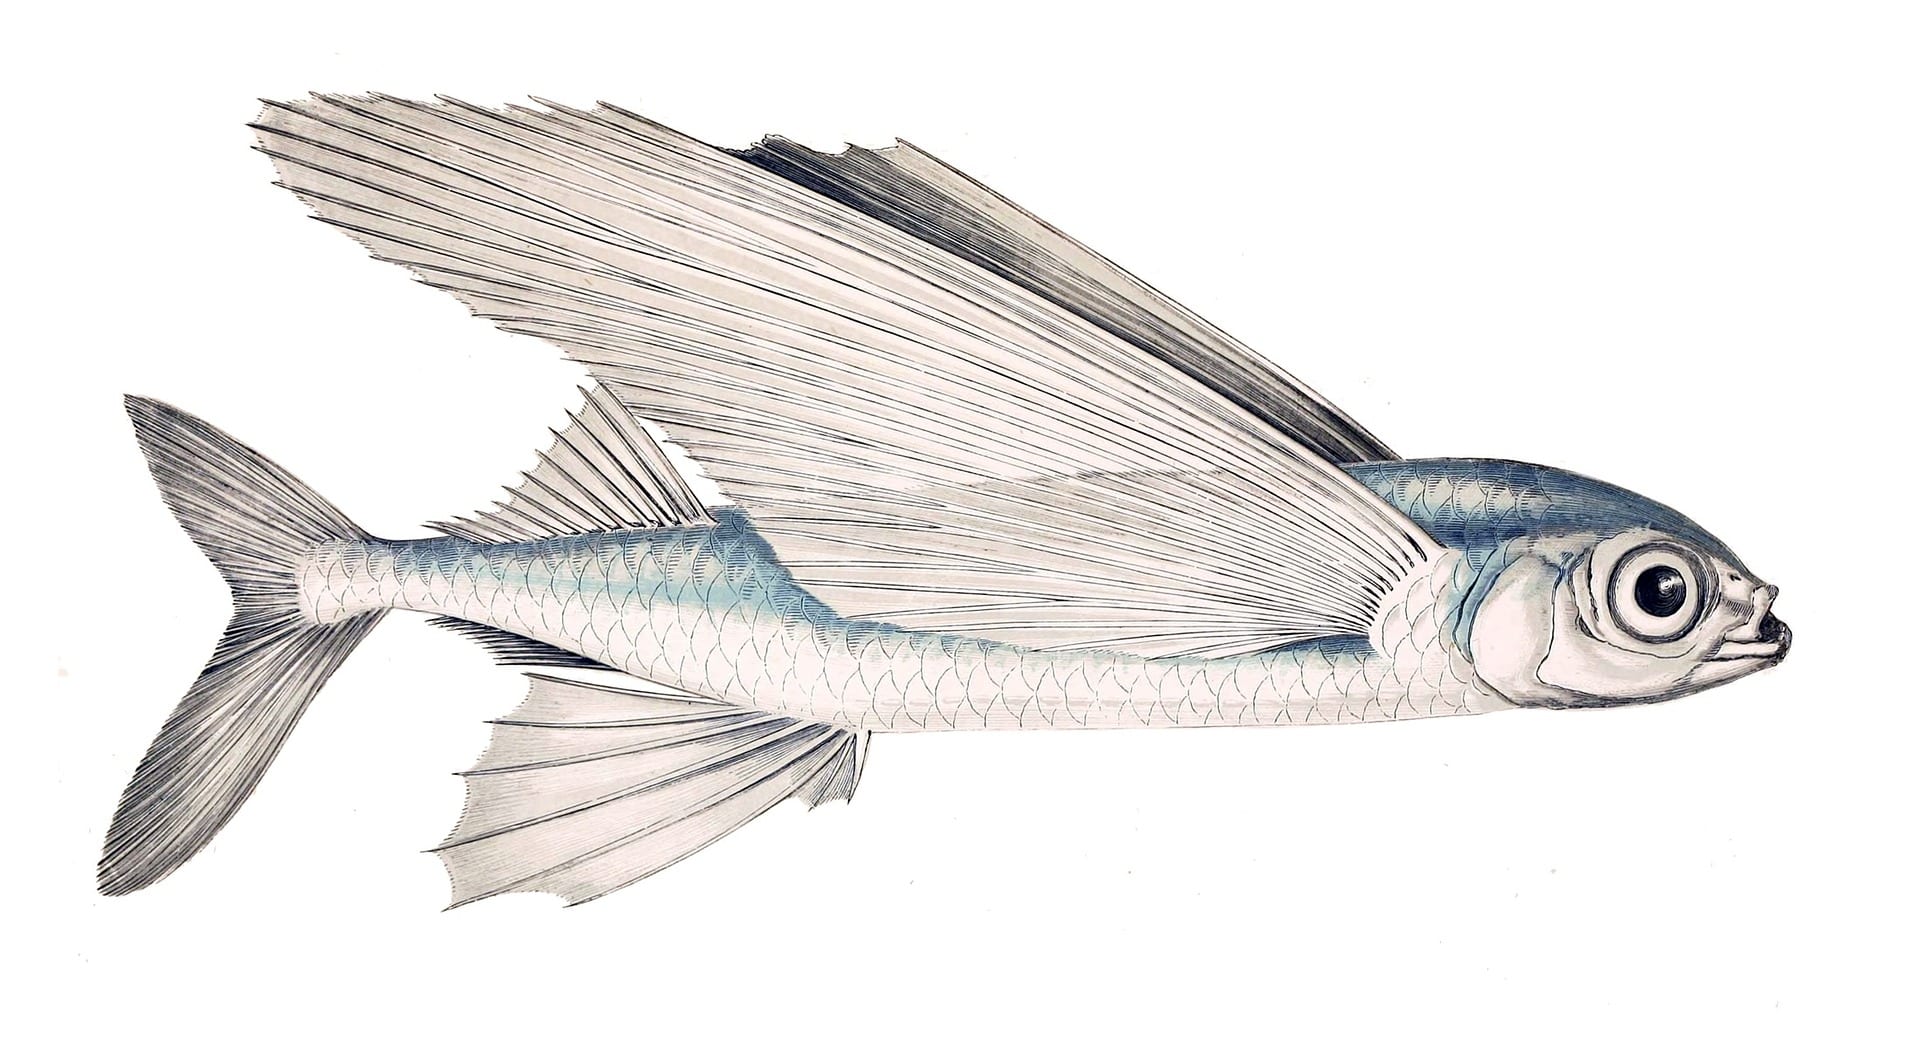 https://pixabay.com/en/schwalbenfisch-fish-flying-fish-63024/